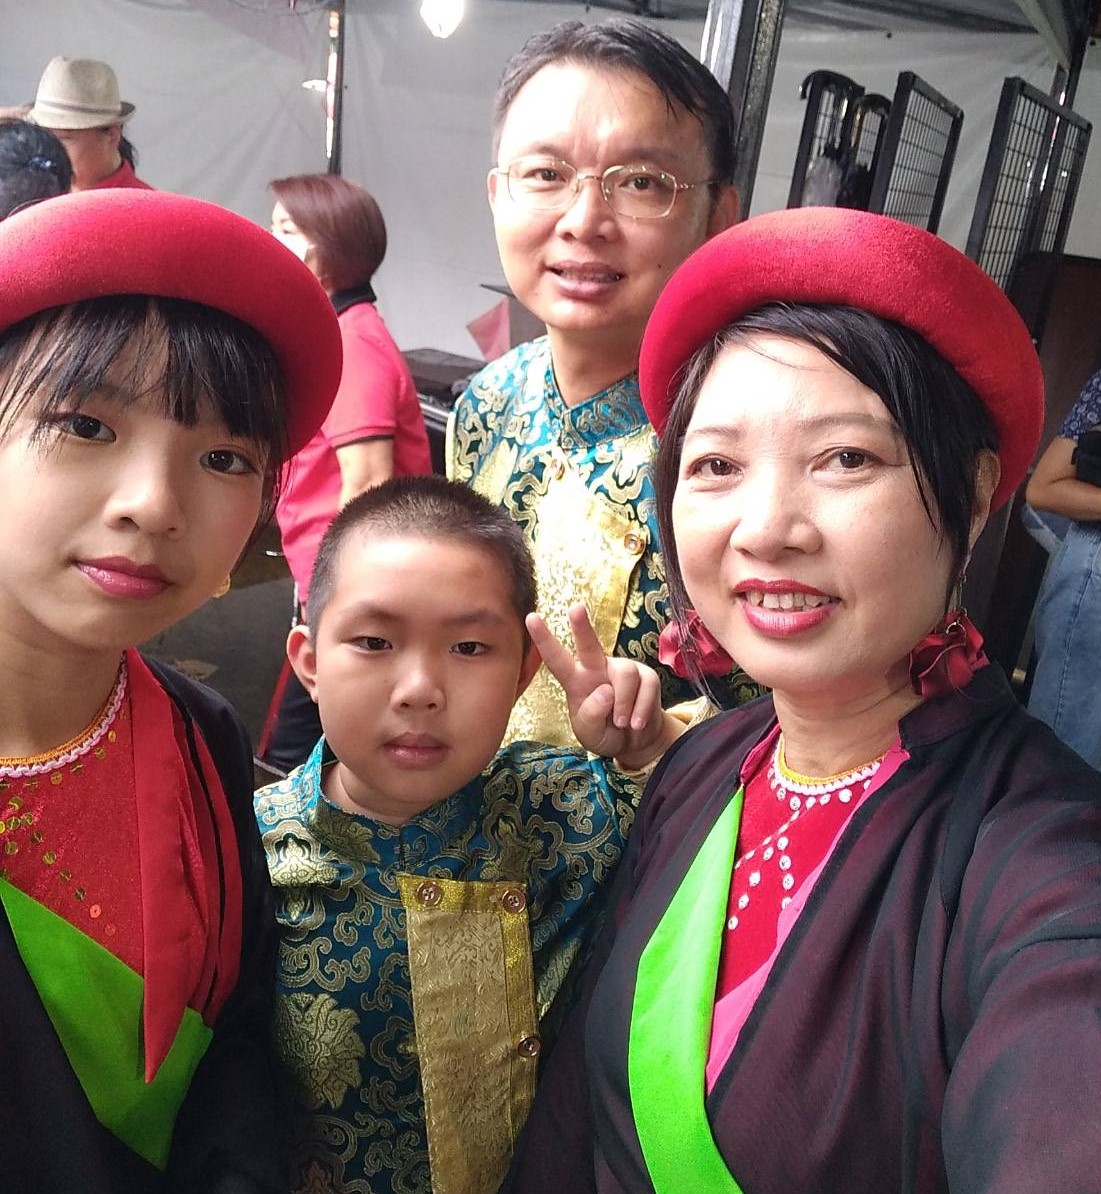 Chị Nguyễn Thị Hà cũng tích cực tham gia các hoạt động văn hóa nghệ thuật nhằm quảng bá văn hóa quê hương Quan họ Bắc Ninh tới người dân Đài Loan. (Nguồn ảnh: Nhân vật cung cấp)